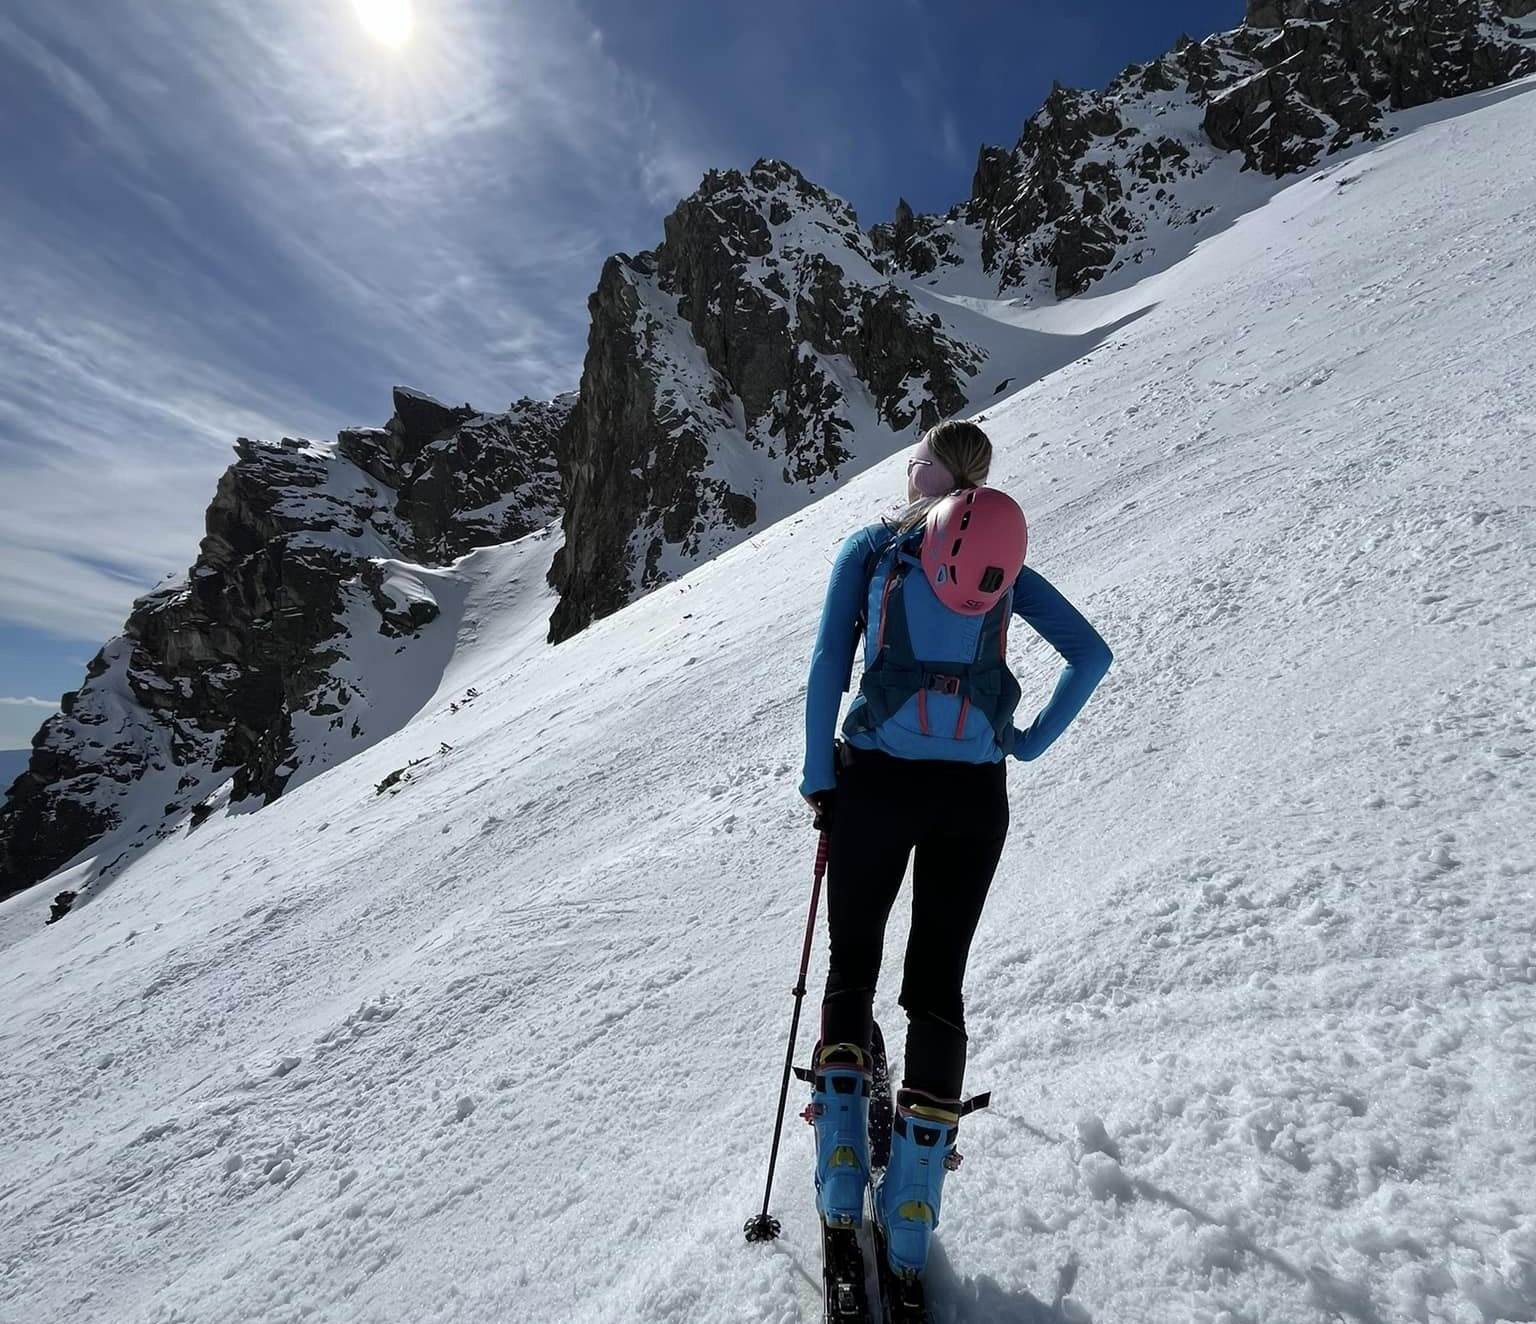 Skialpinisti a horolezci majú v TANAP jarnú sezónnu uzáveru